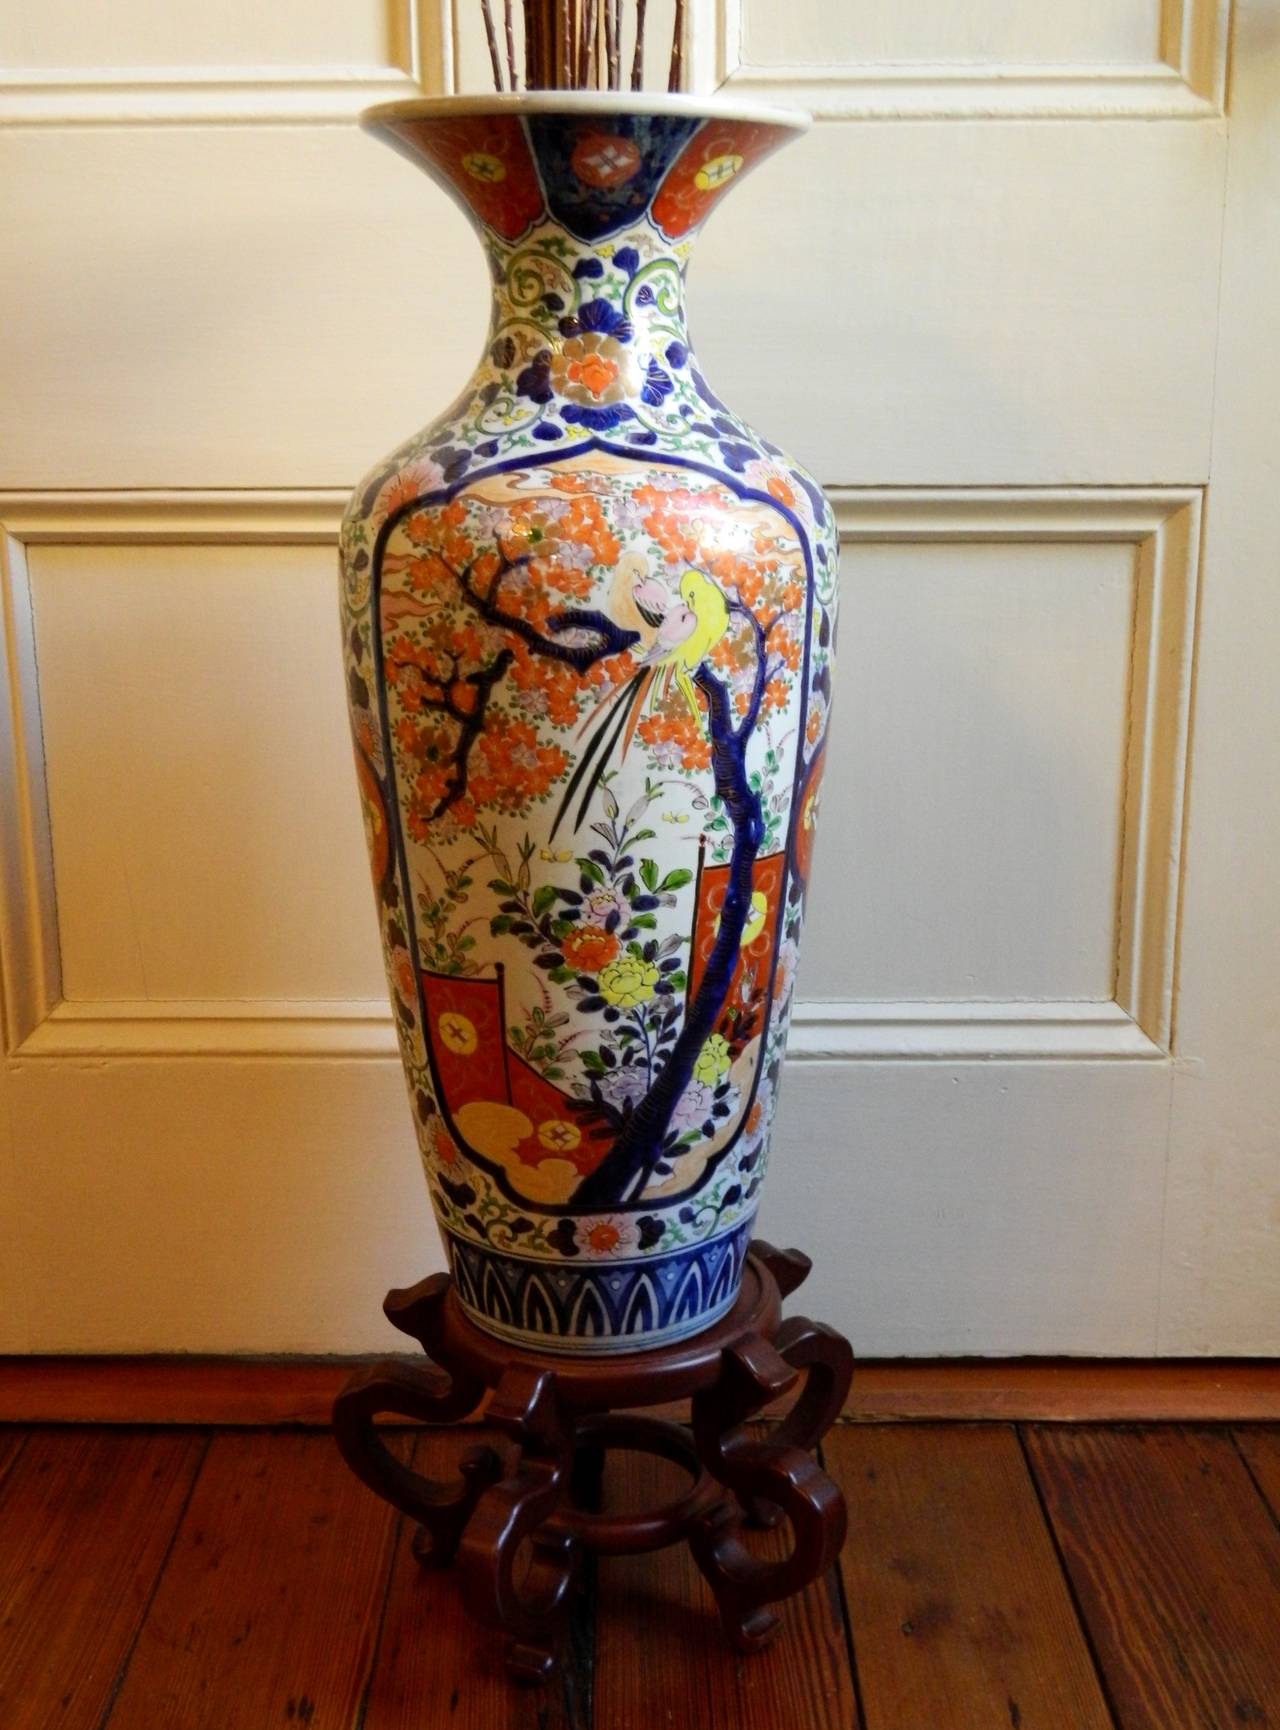 Japanese Imari Porcelain Palace Urn or Vase on Wood Stand, Late 19th Century